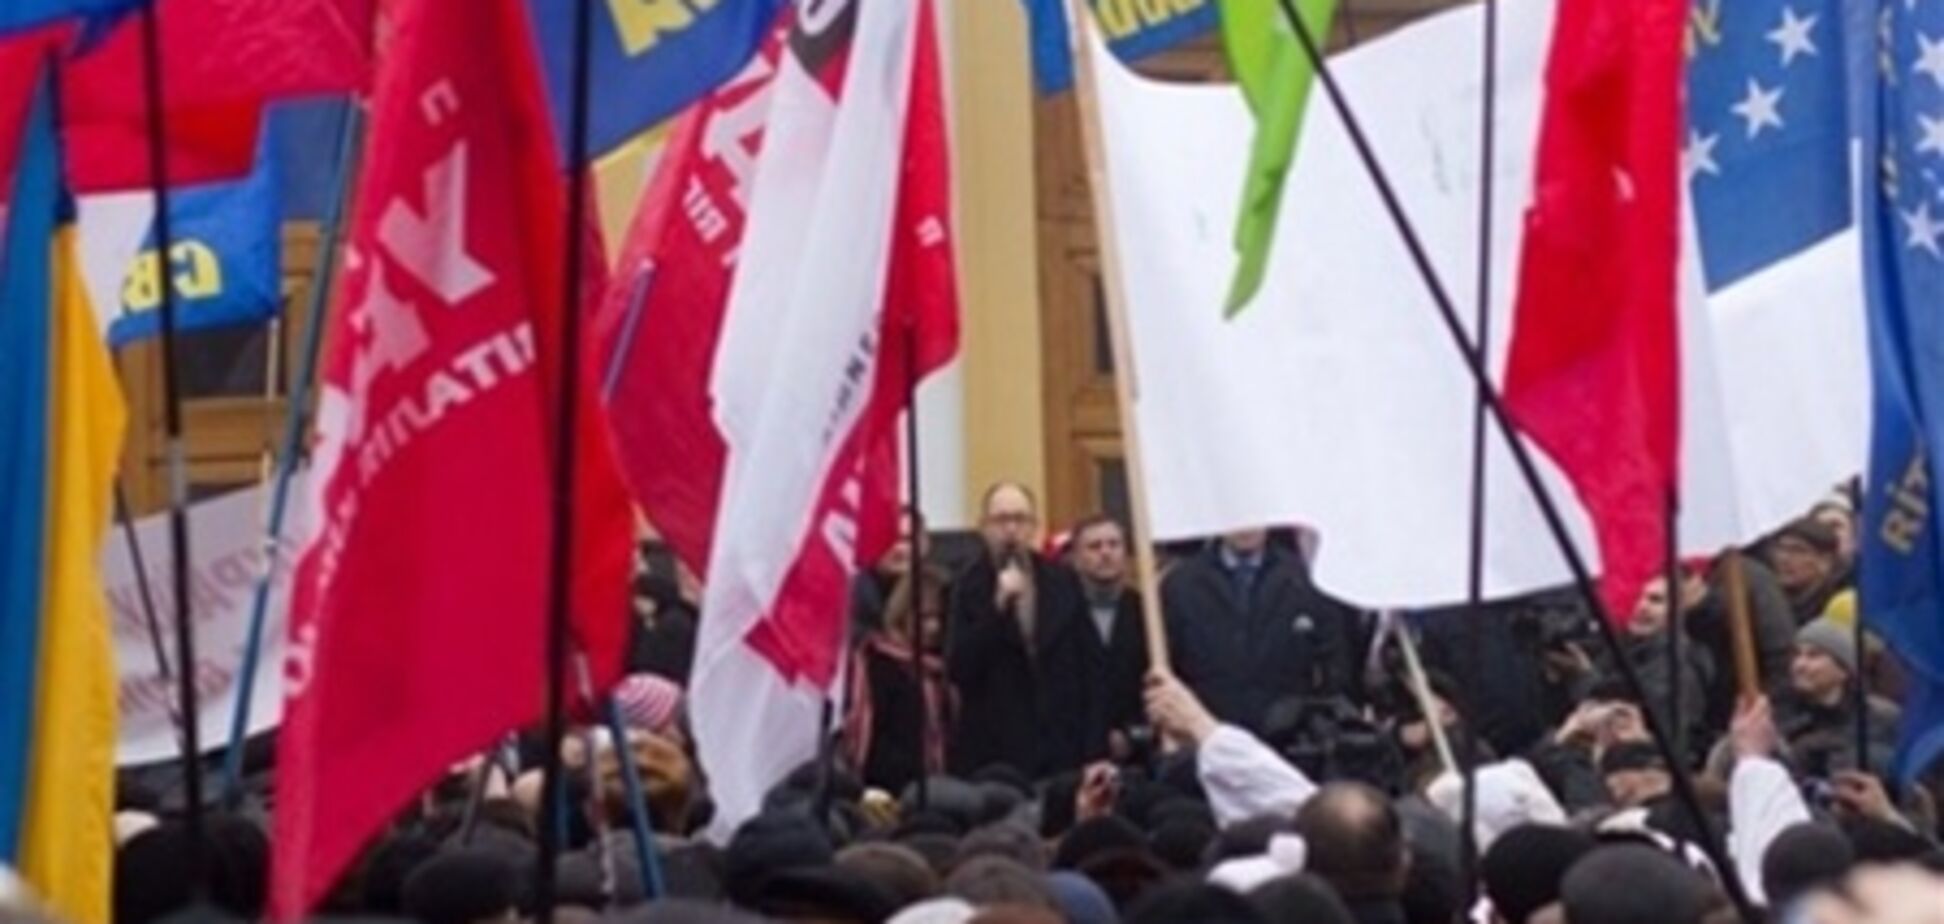 Милиция Харькова: общественный порядок во время митинга обеспечим